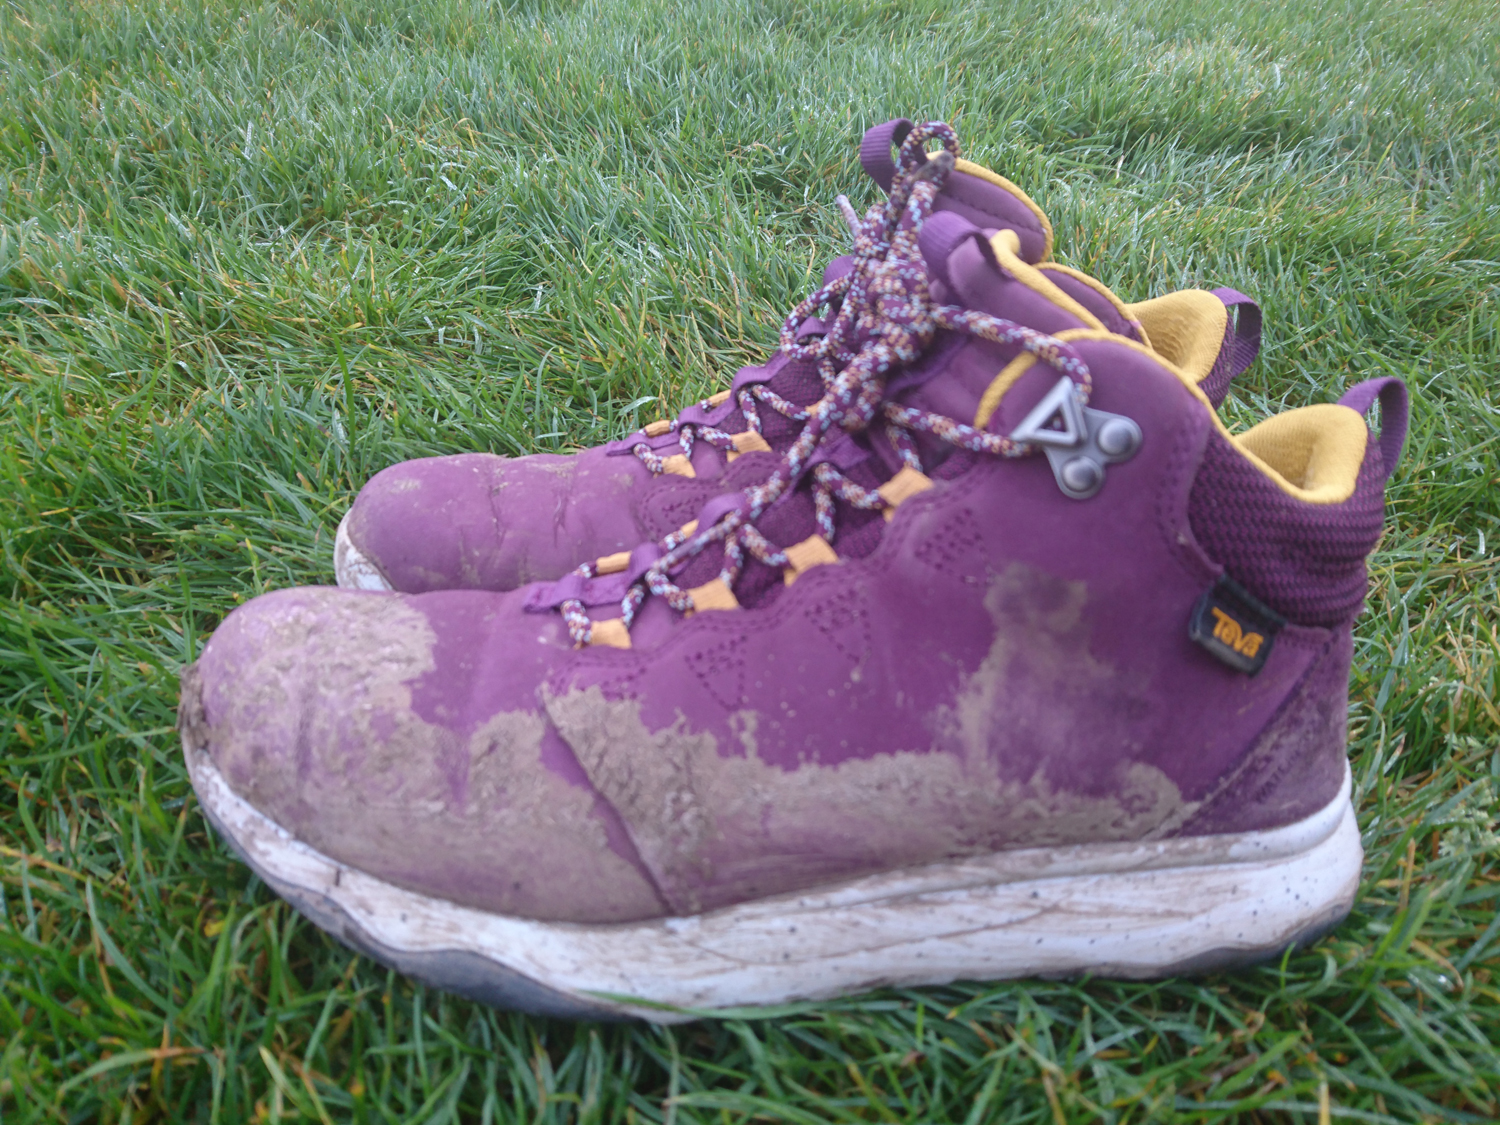 Teva Arrowood boots after a muddy walk